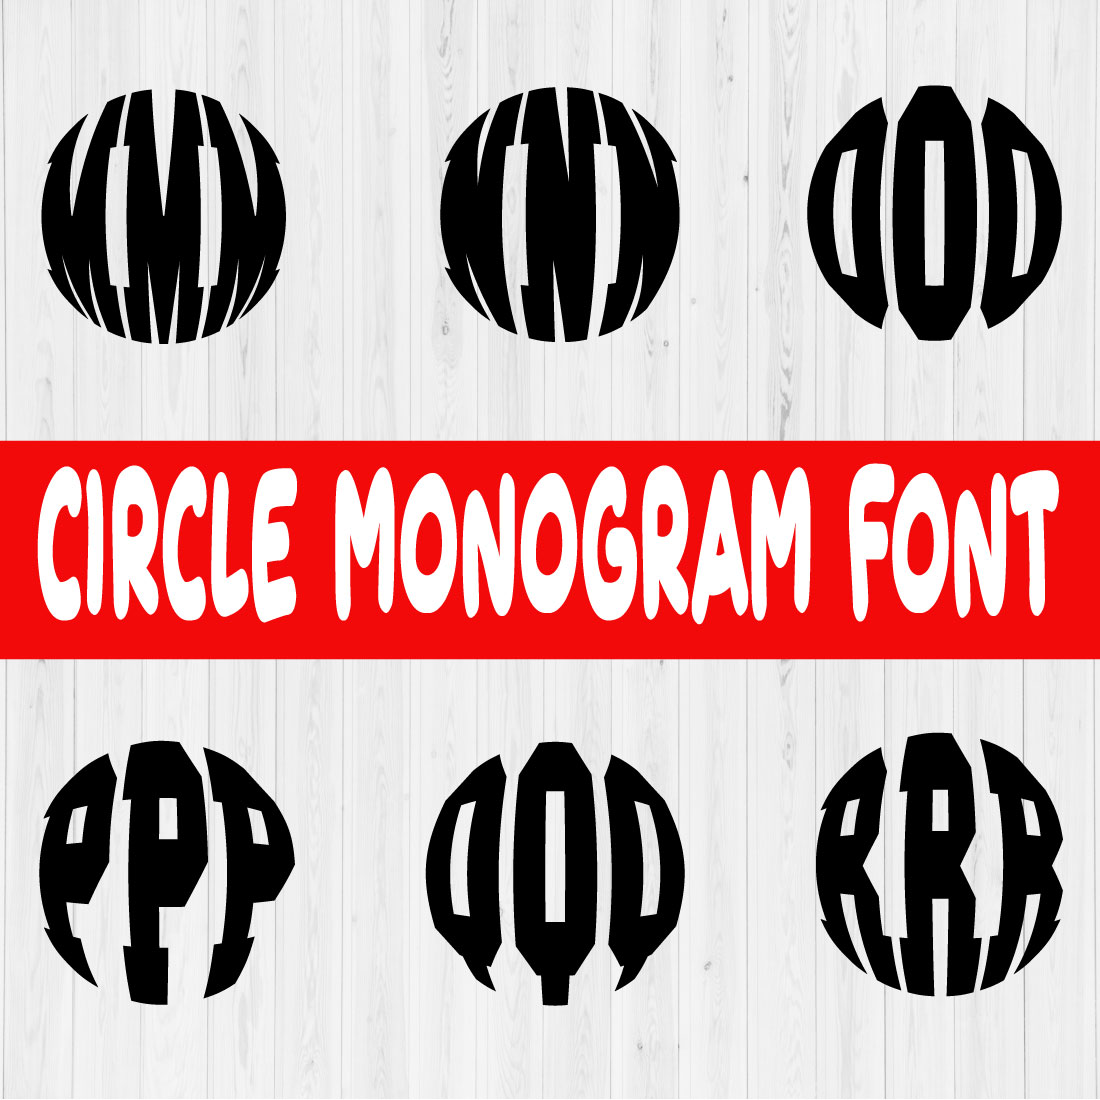 Circle Monogram Font Vol3 preview image.